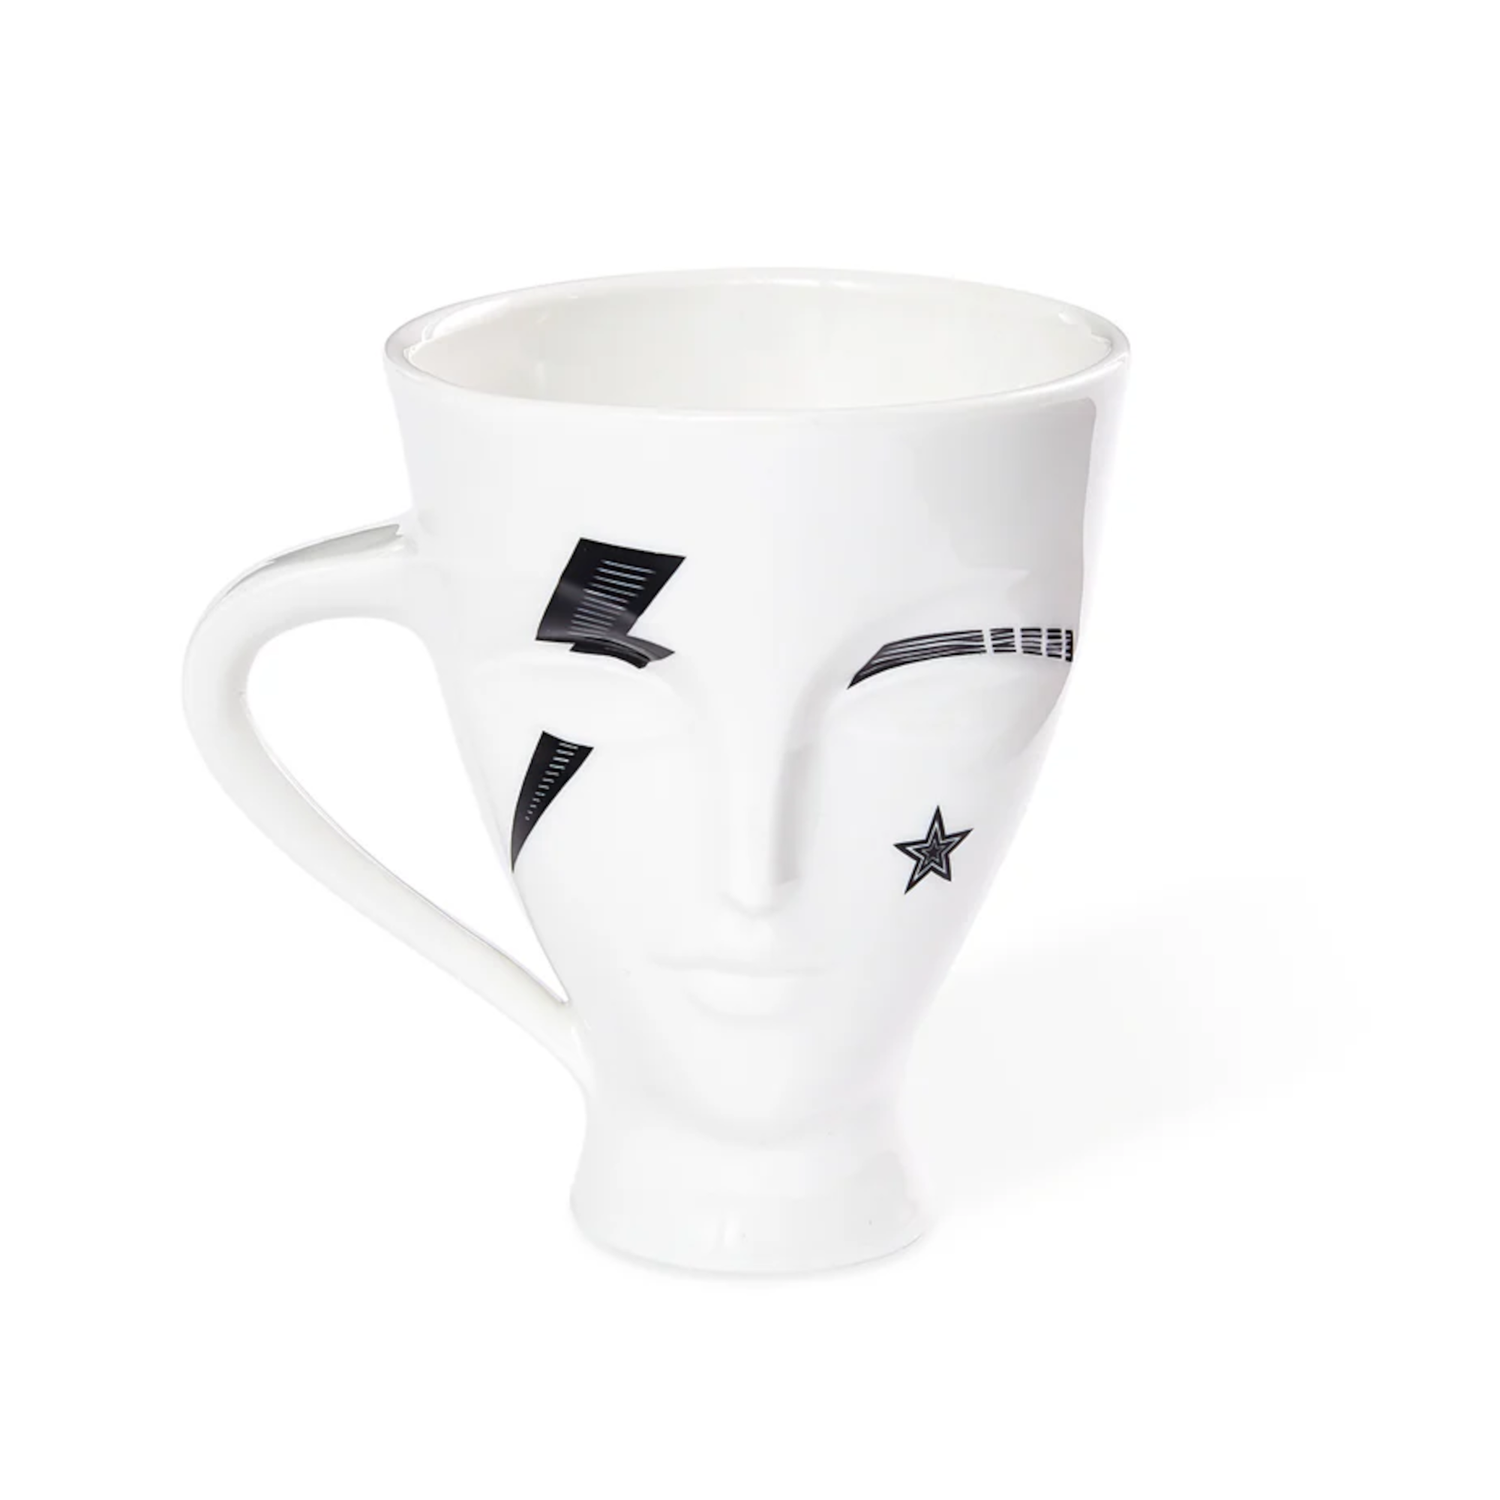 INKED GIULIETTE porcelain mug